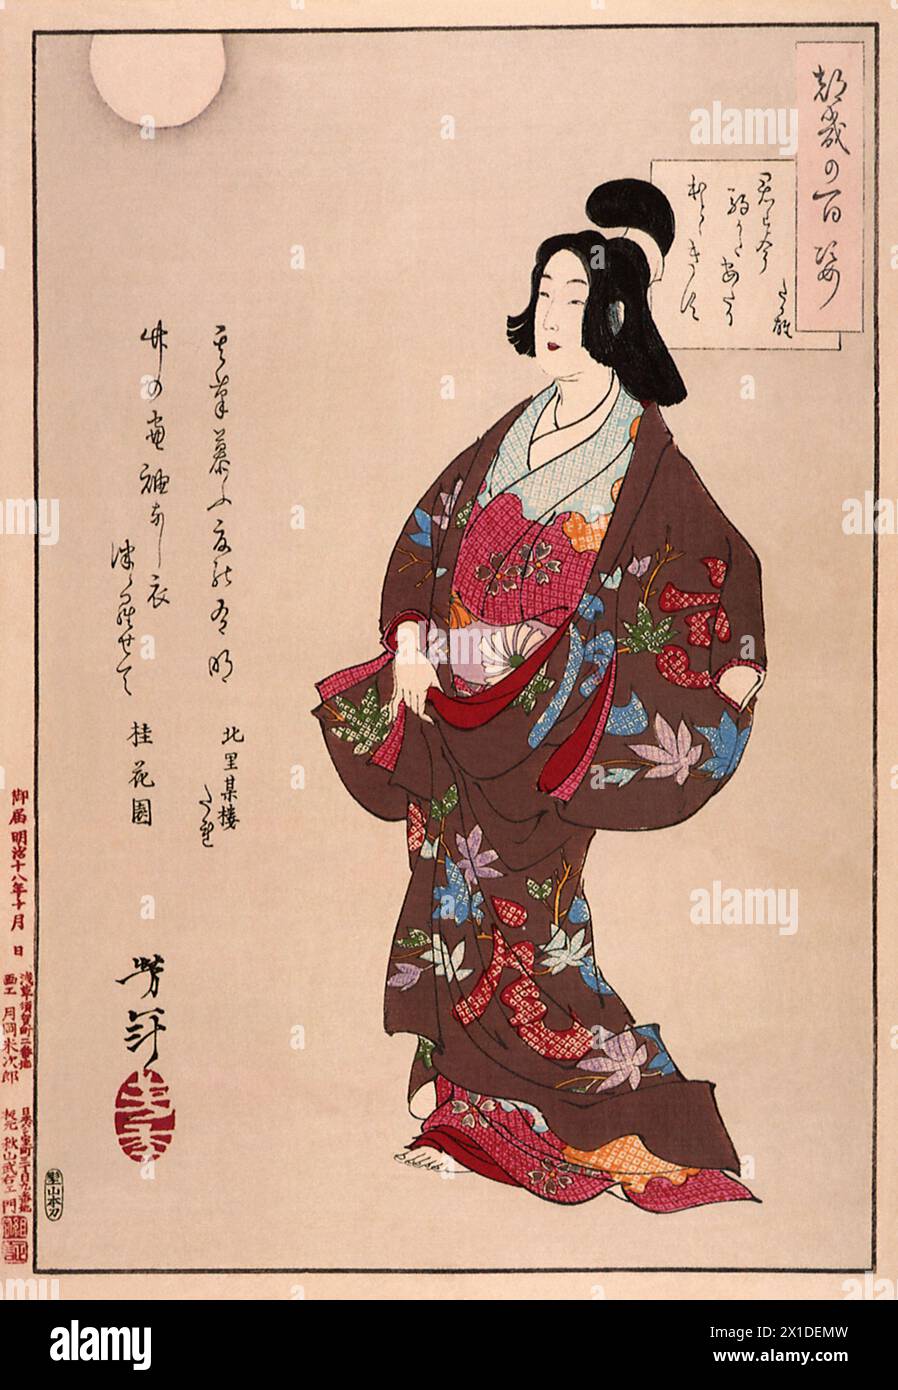 Tsukioka Yoshitoshi (1839 bis 9. Juni 1892) einer der letzten großen Meister des klassischen japanischen Farbholzschnitt, hier das Werk  A Cuckoo Calls - Takao Stock Photo